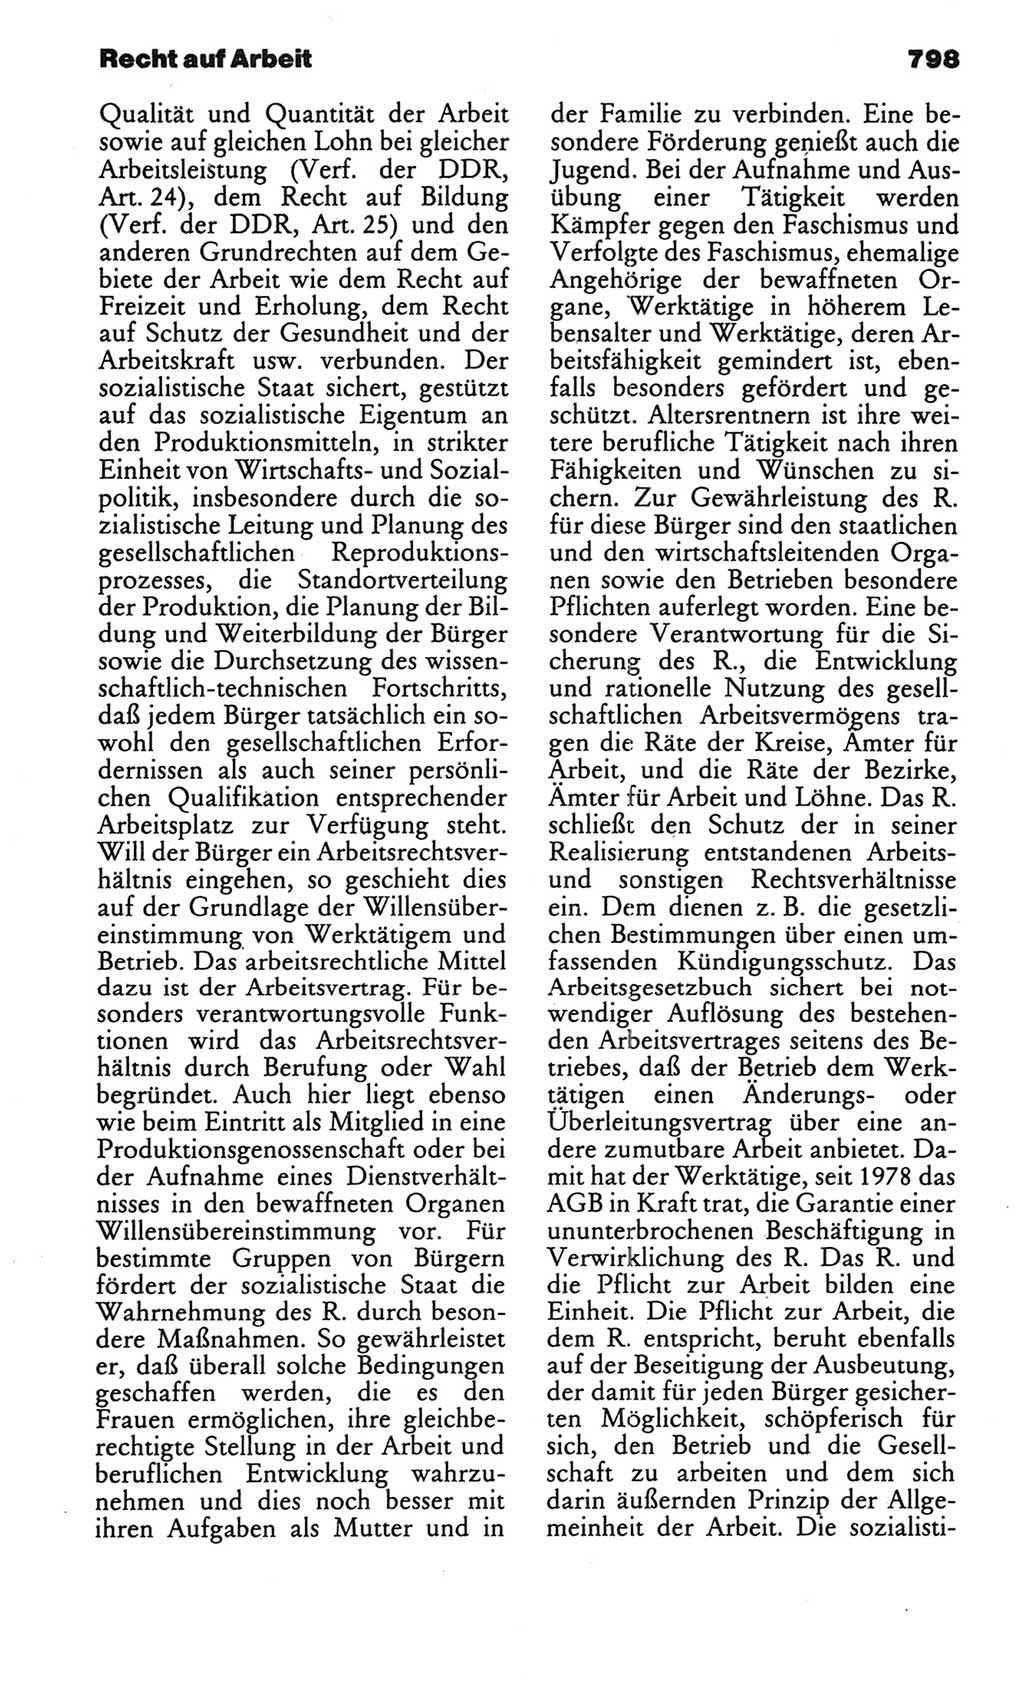 Kleines politisches Wörterbuch [Deutsche Demokratische Republik (DDR)] 1986, Seite 798 (Kl. pol. Wb. DDR 1986, S. 798)